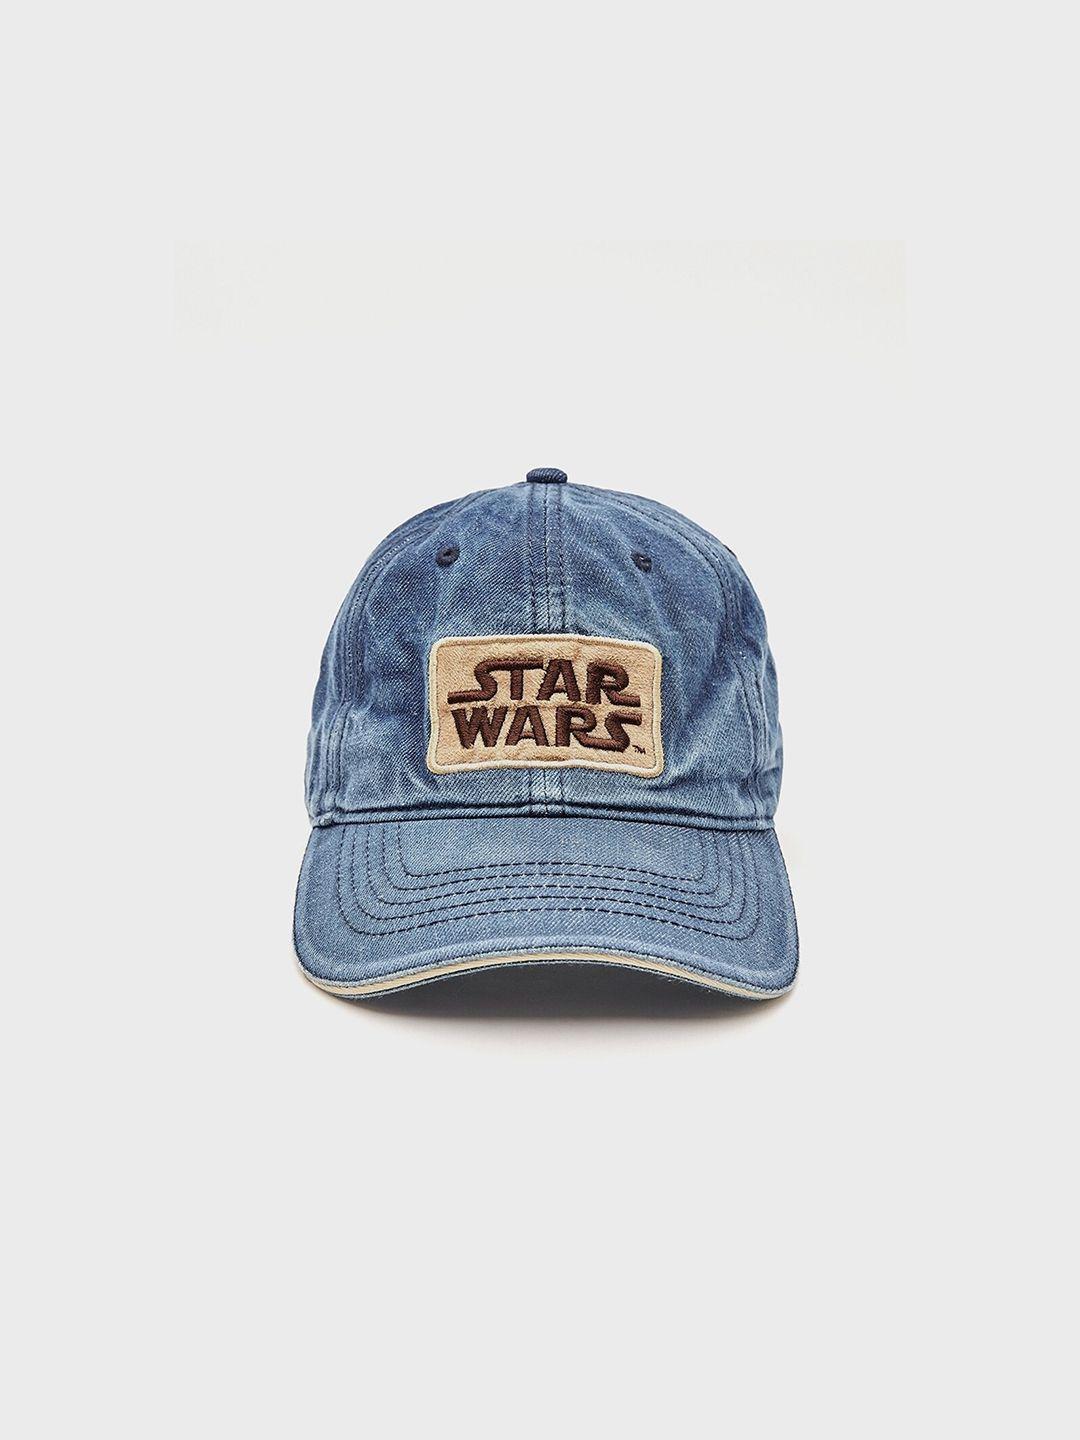 bewakoof unisex blue star war embroidered cotton baseball cap